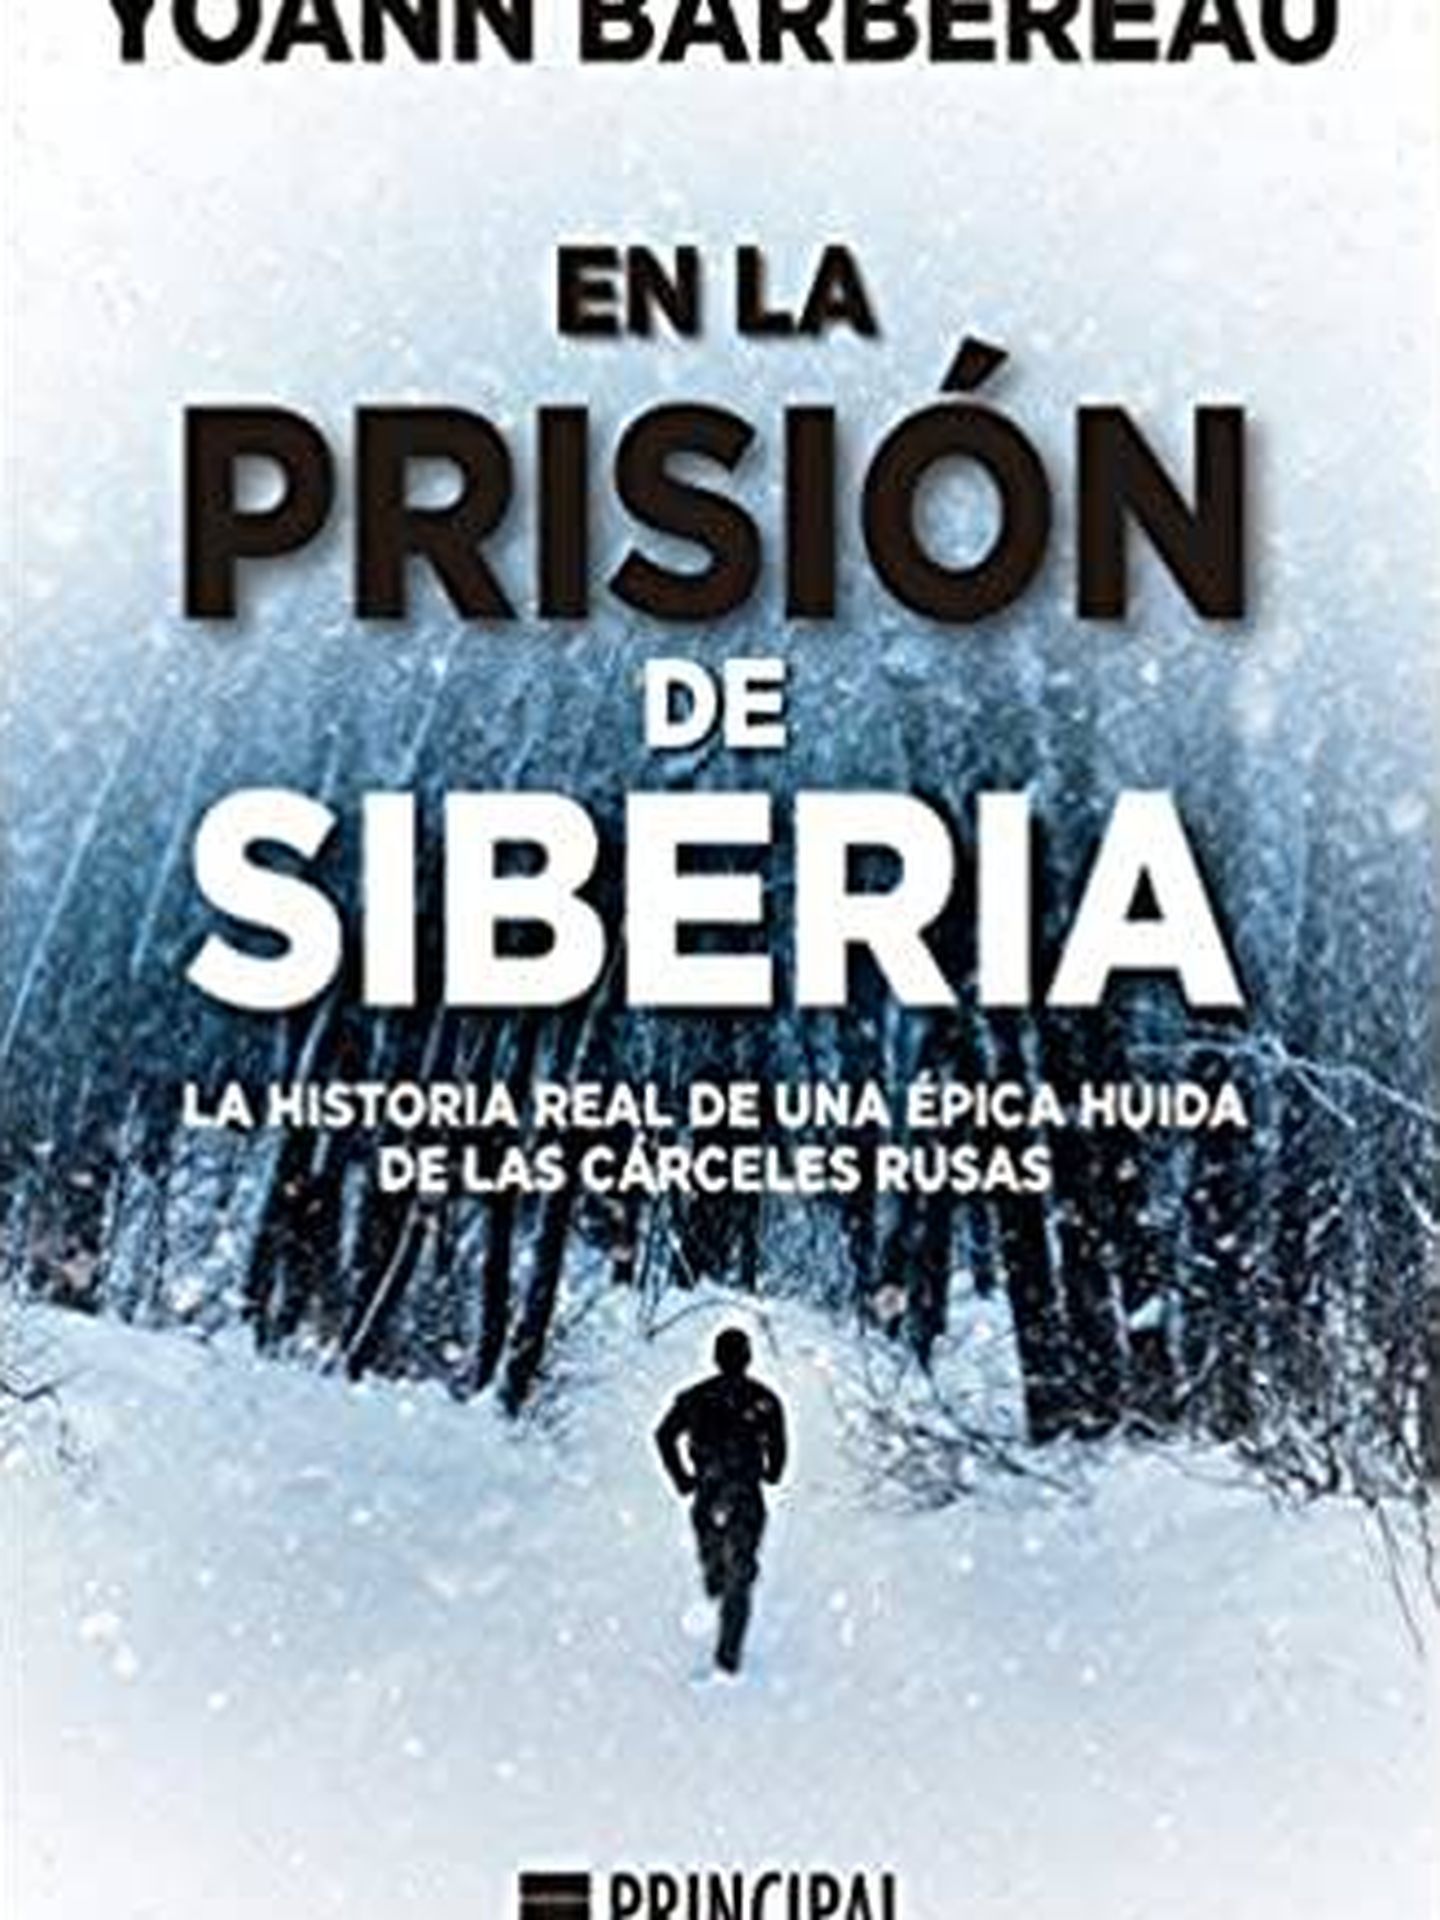 'En la prisión de Siberia'.